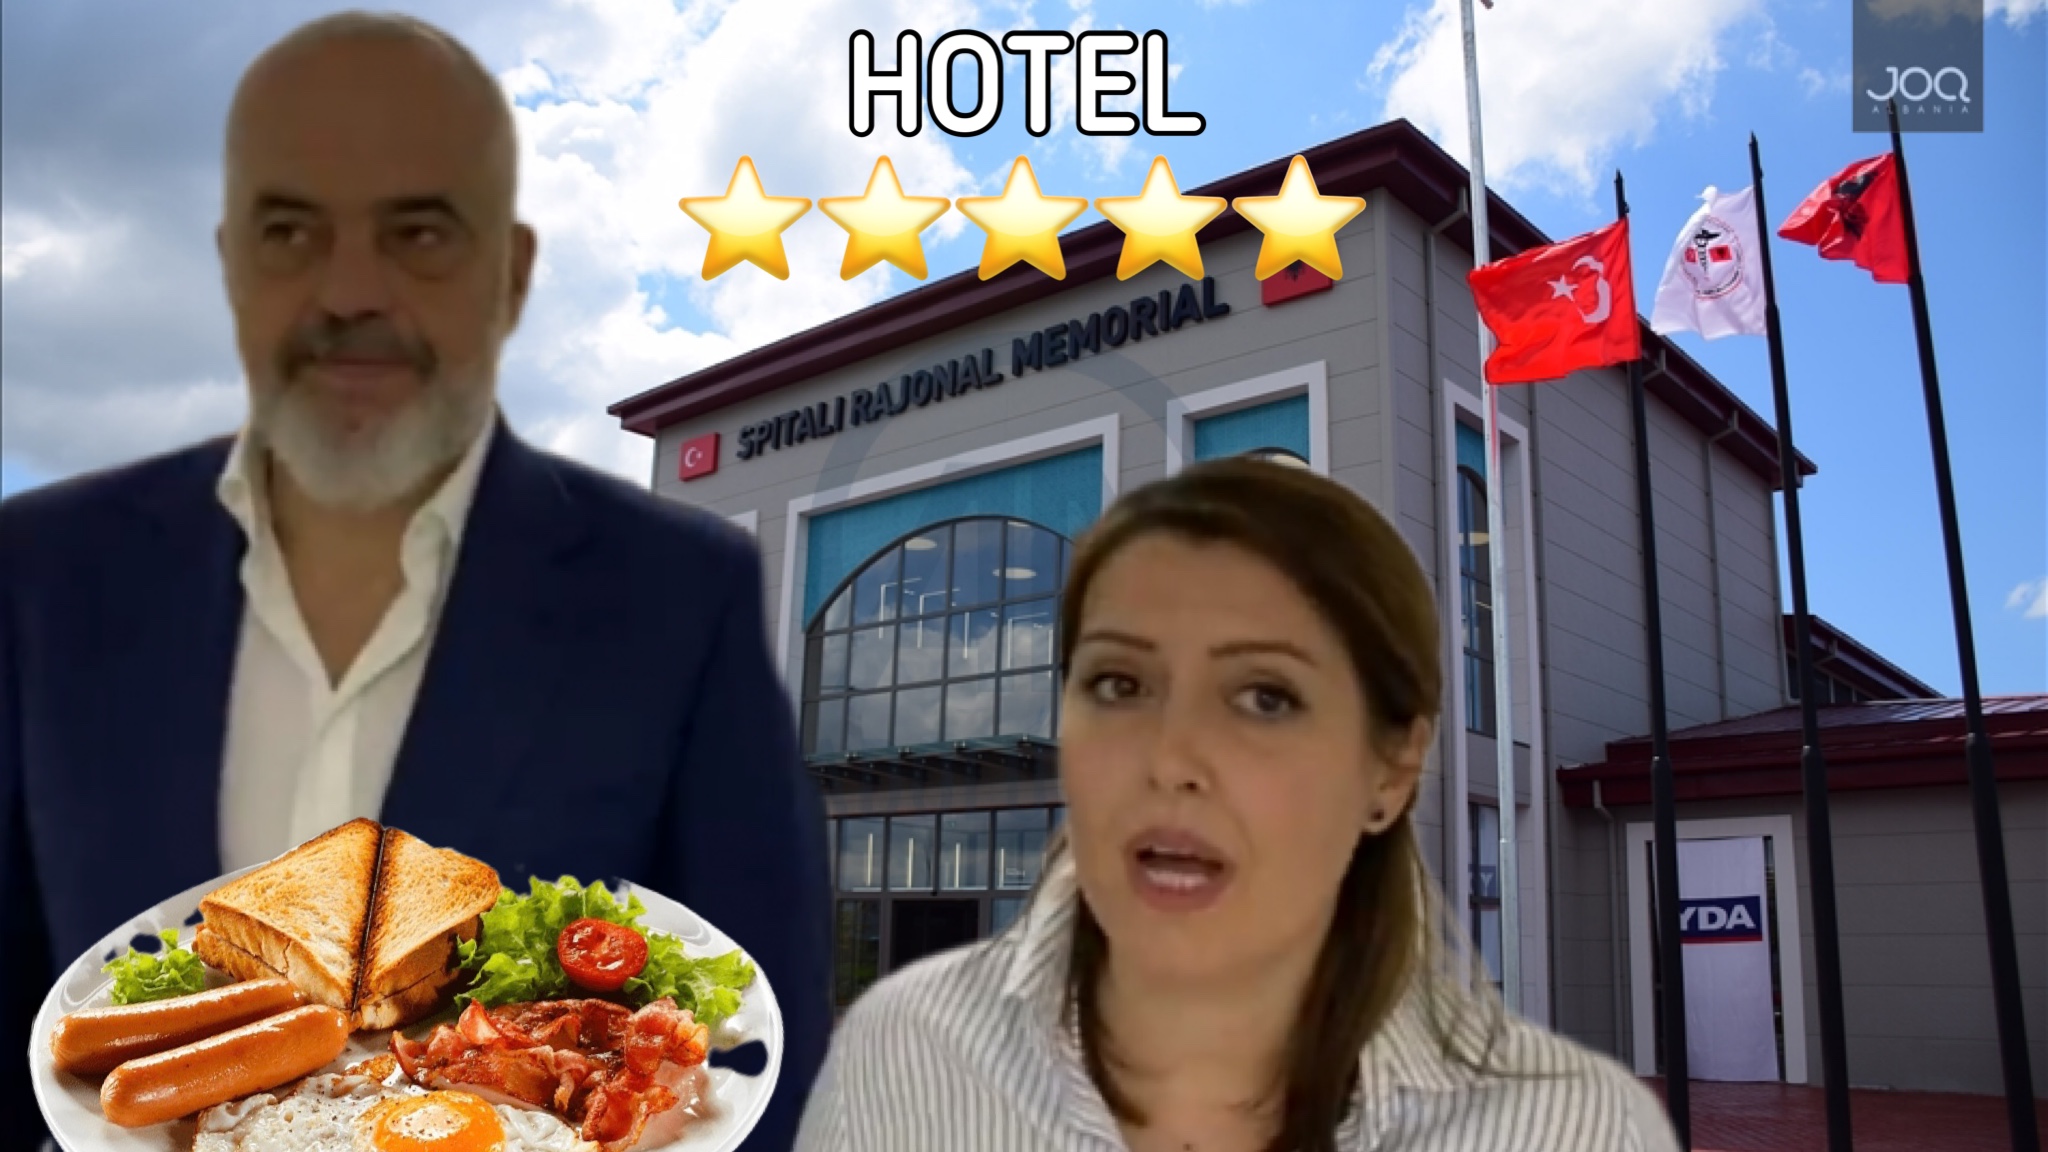 ÇMENDURI! Manastirliu me 1.2 MILIONË € nga taksat tona do akomodojë mjekët turq në hotel me 5 YJE